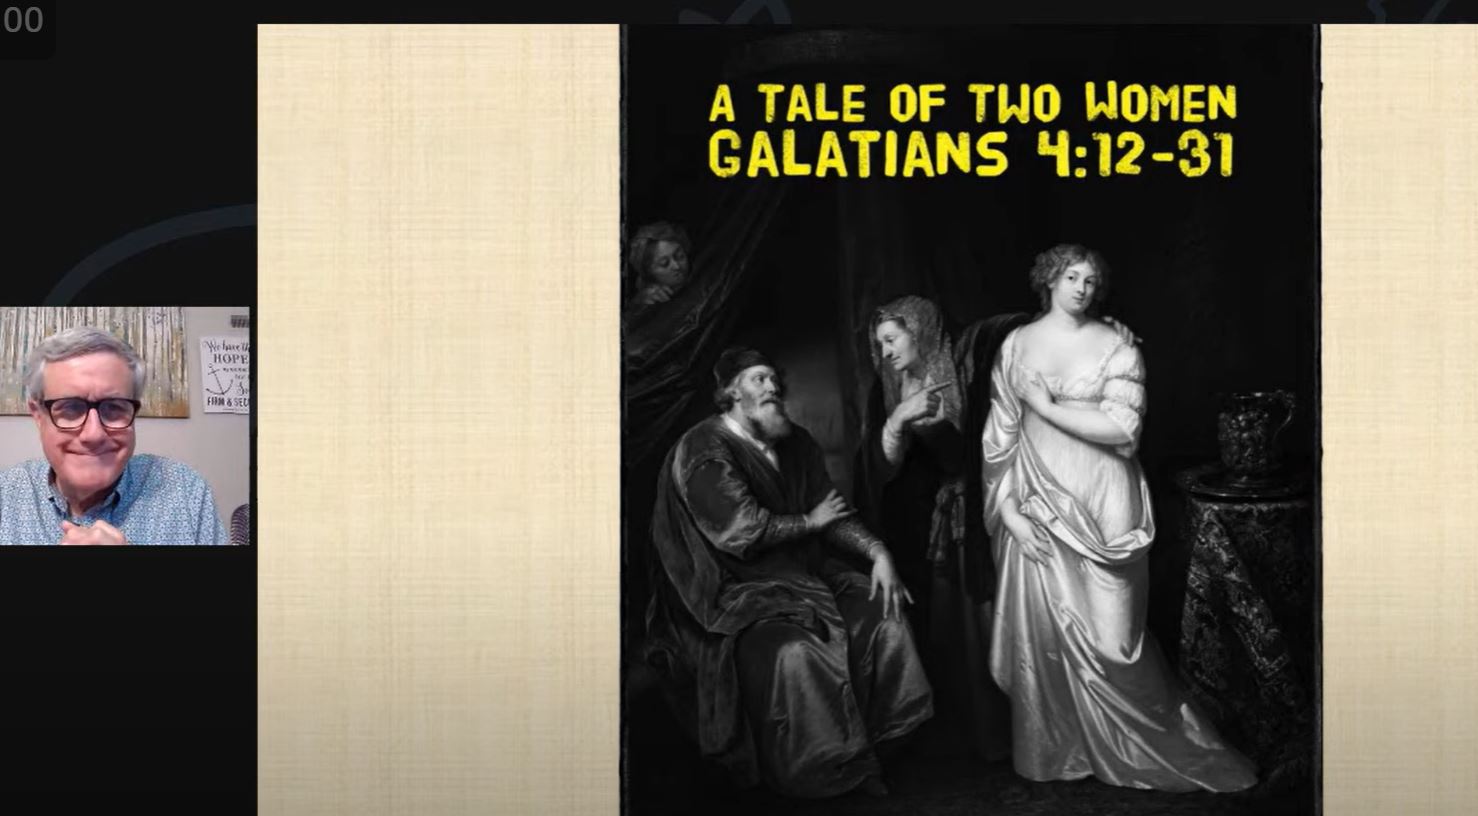 A Tale of Two Women (Galatians 4:12-31)